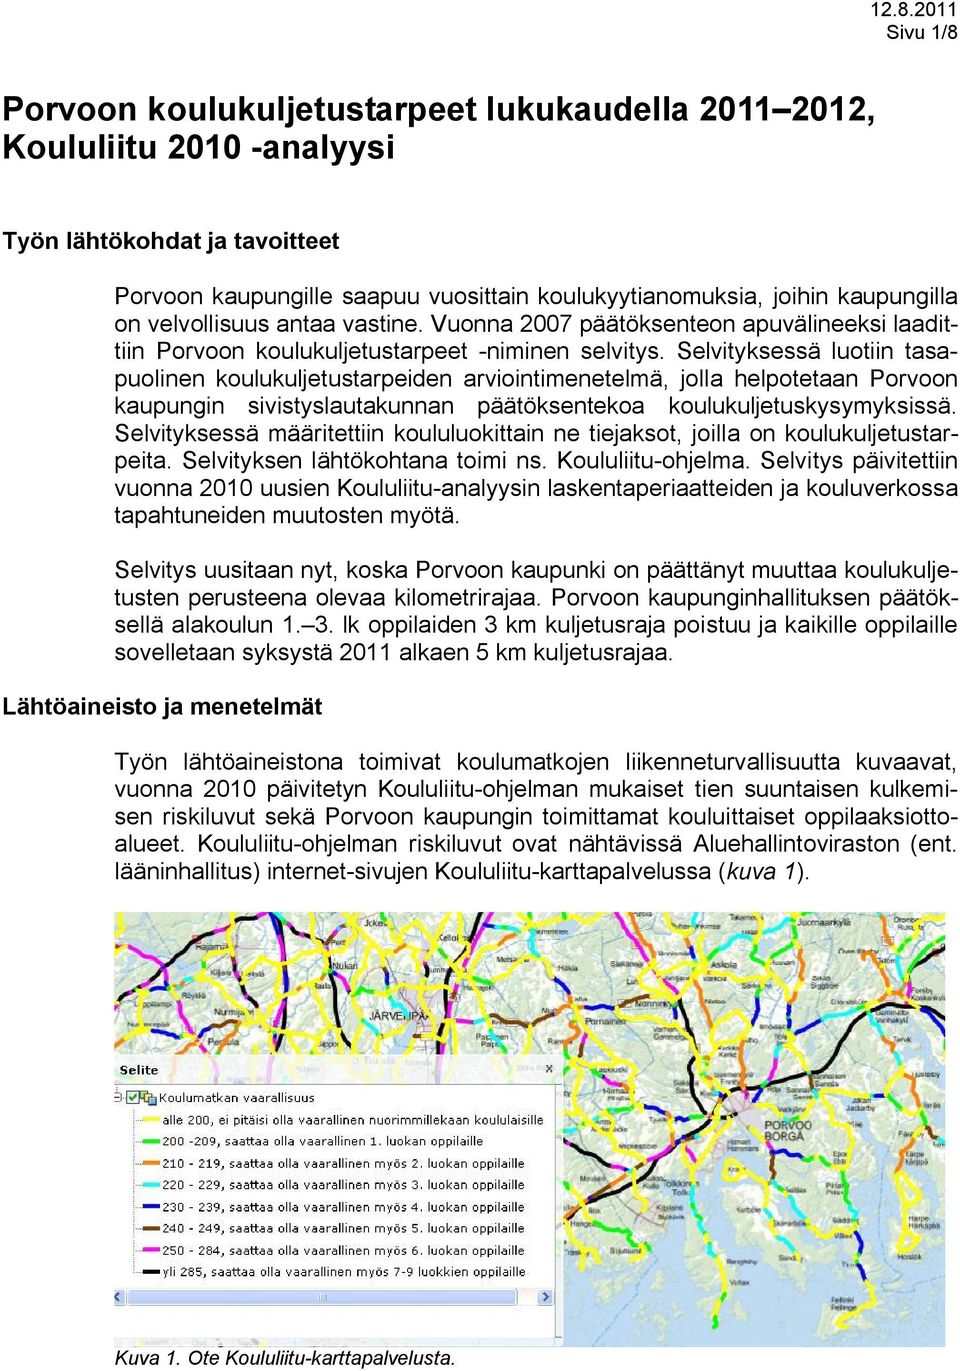 Selvityksessä luotiin tasapuolinen koulukuljetustarpeiden arviointimenetelmä, jolla helpotetaan Porvoon kaupungin sivistyslautakunnan päätöksentekoa koulukuljetuskysymyksissä.